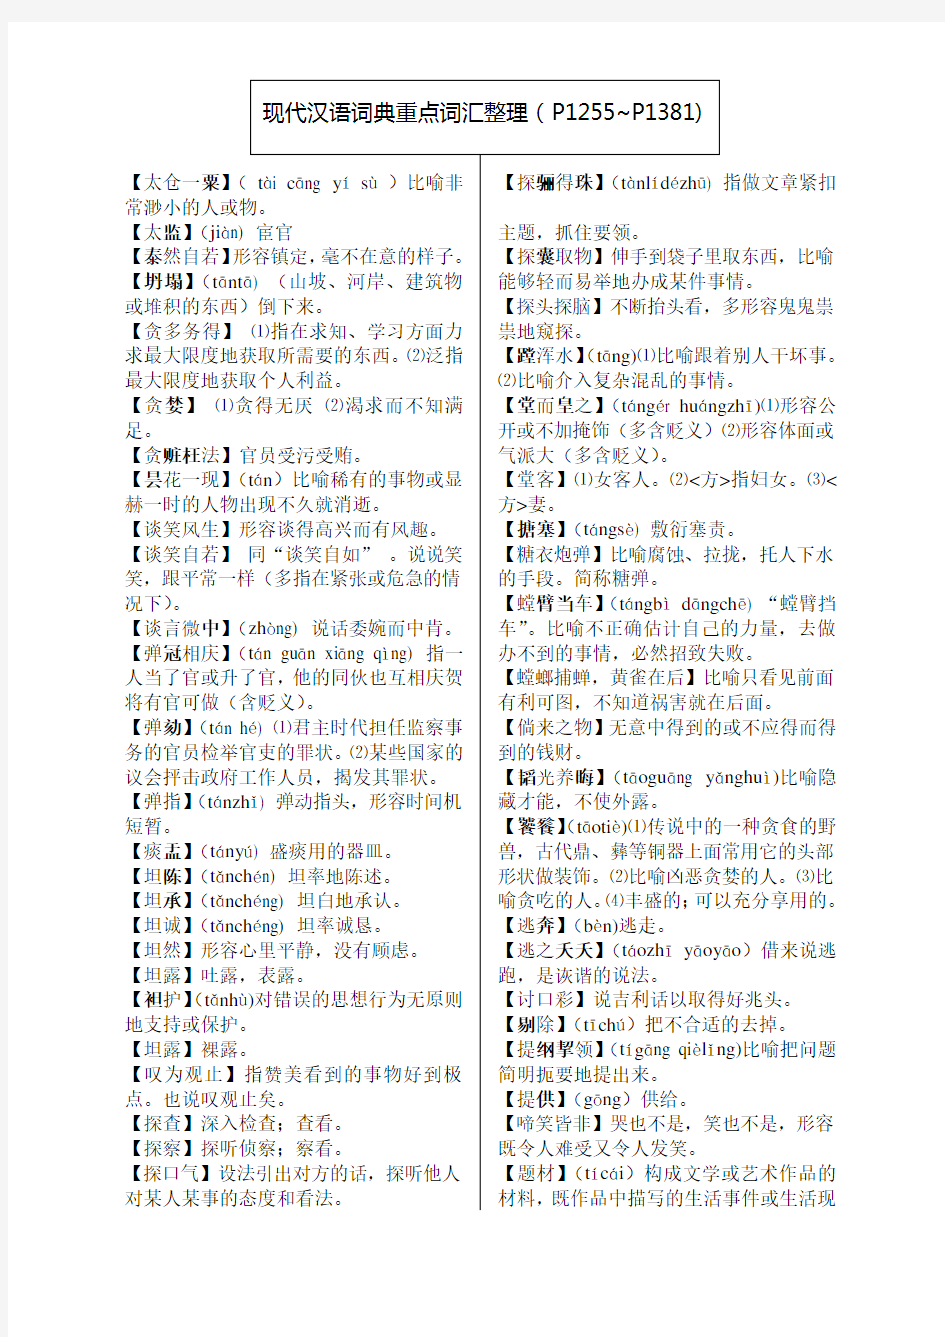 现代汉语重点词汇整理